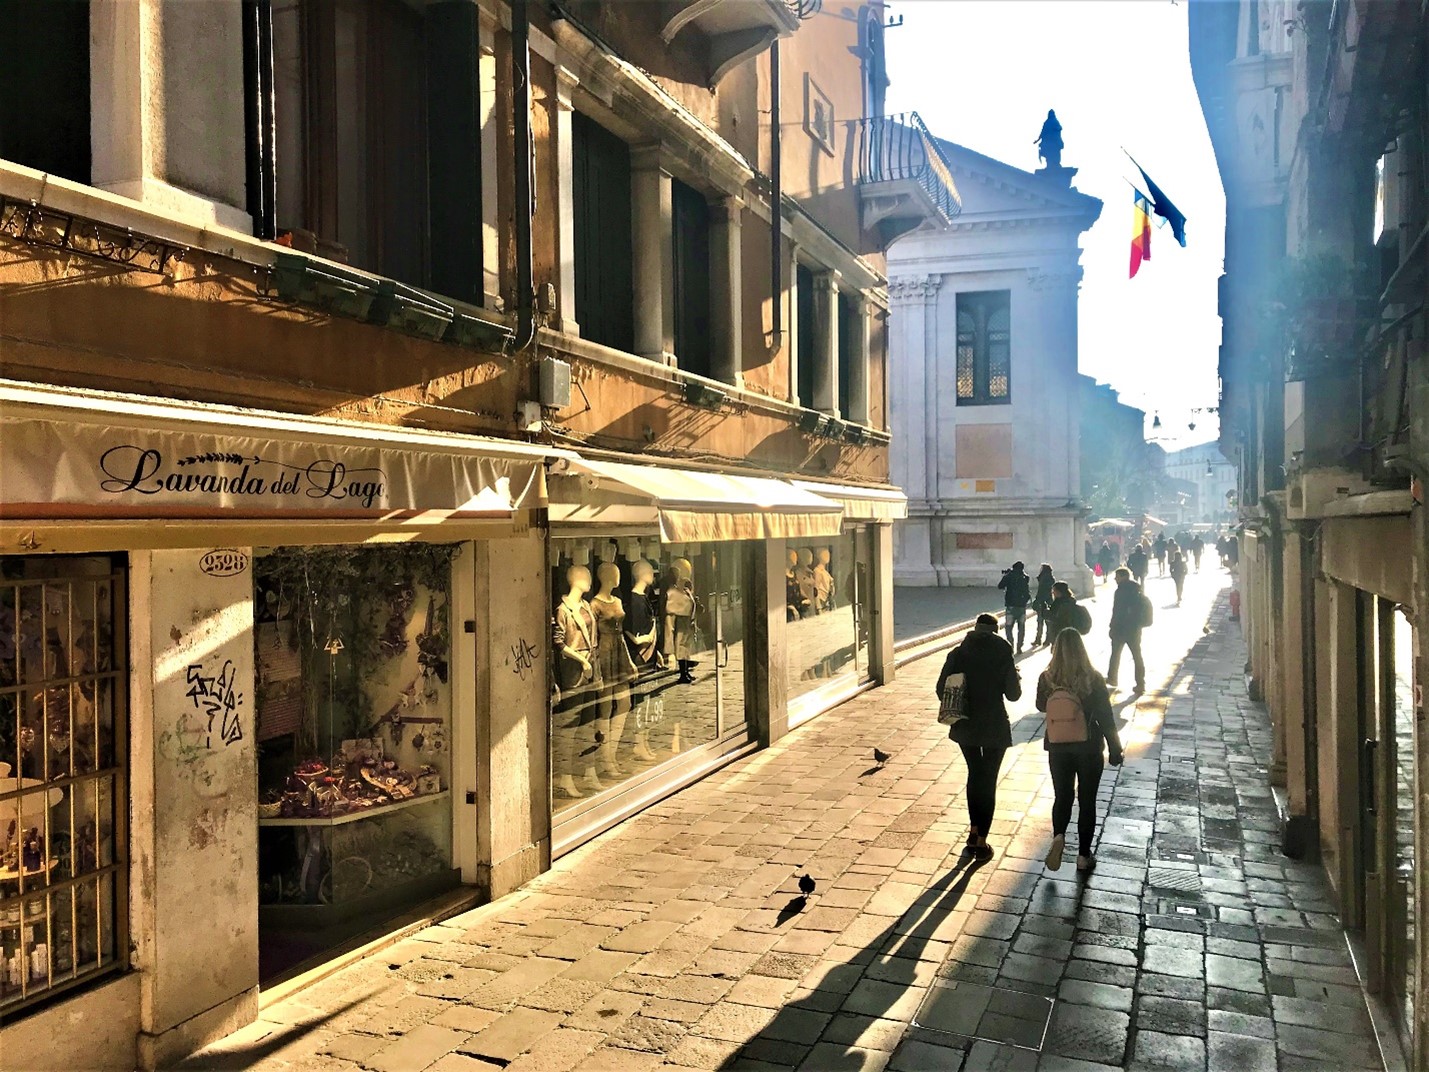 Как и И. Бродский, я люблю бывать в Венеции зимой, преимущественно, в феврале... мне нравится этот контраст света и тени